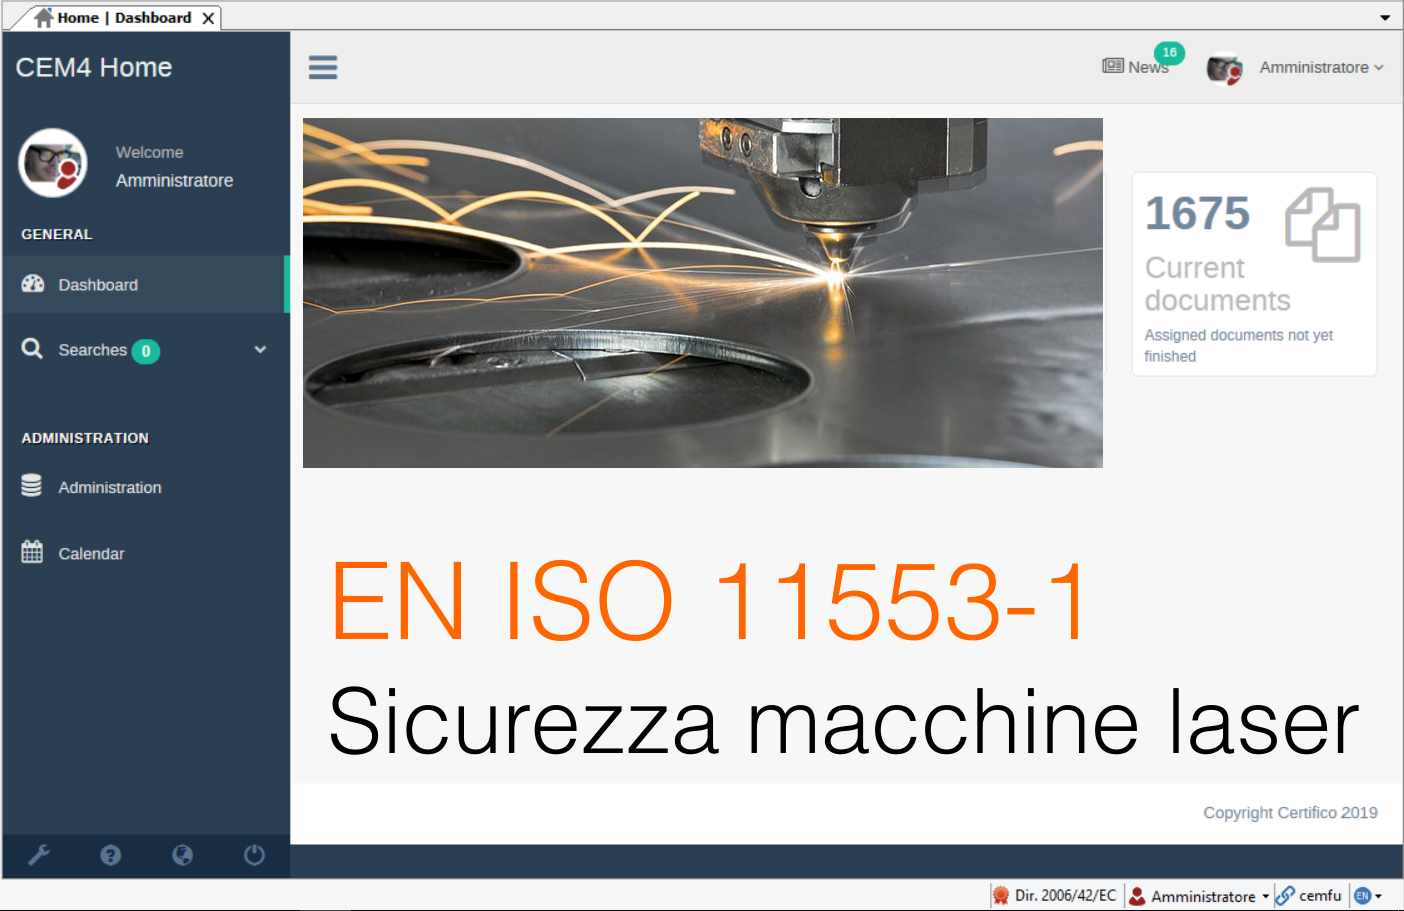 EN ISO 11553-1 Sicurezza macchine laser